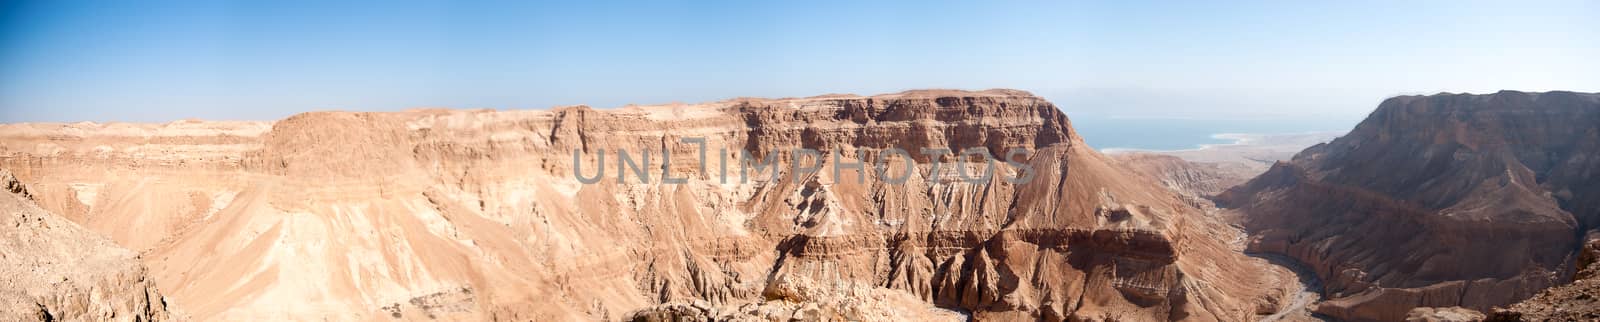 stone desert panorama by javax